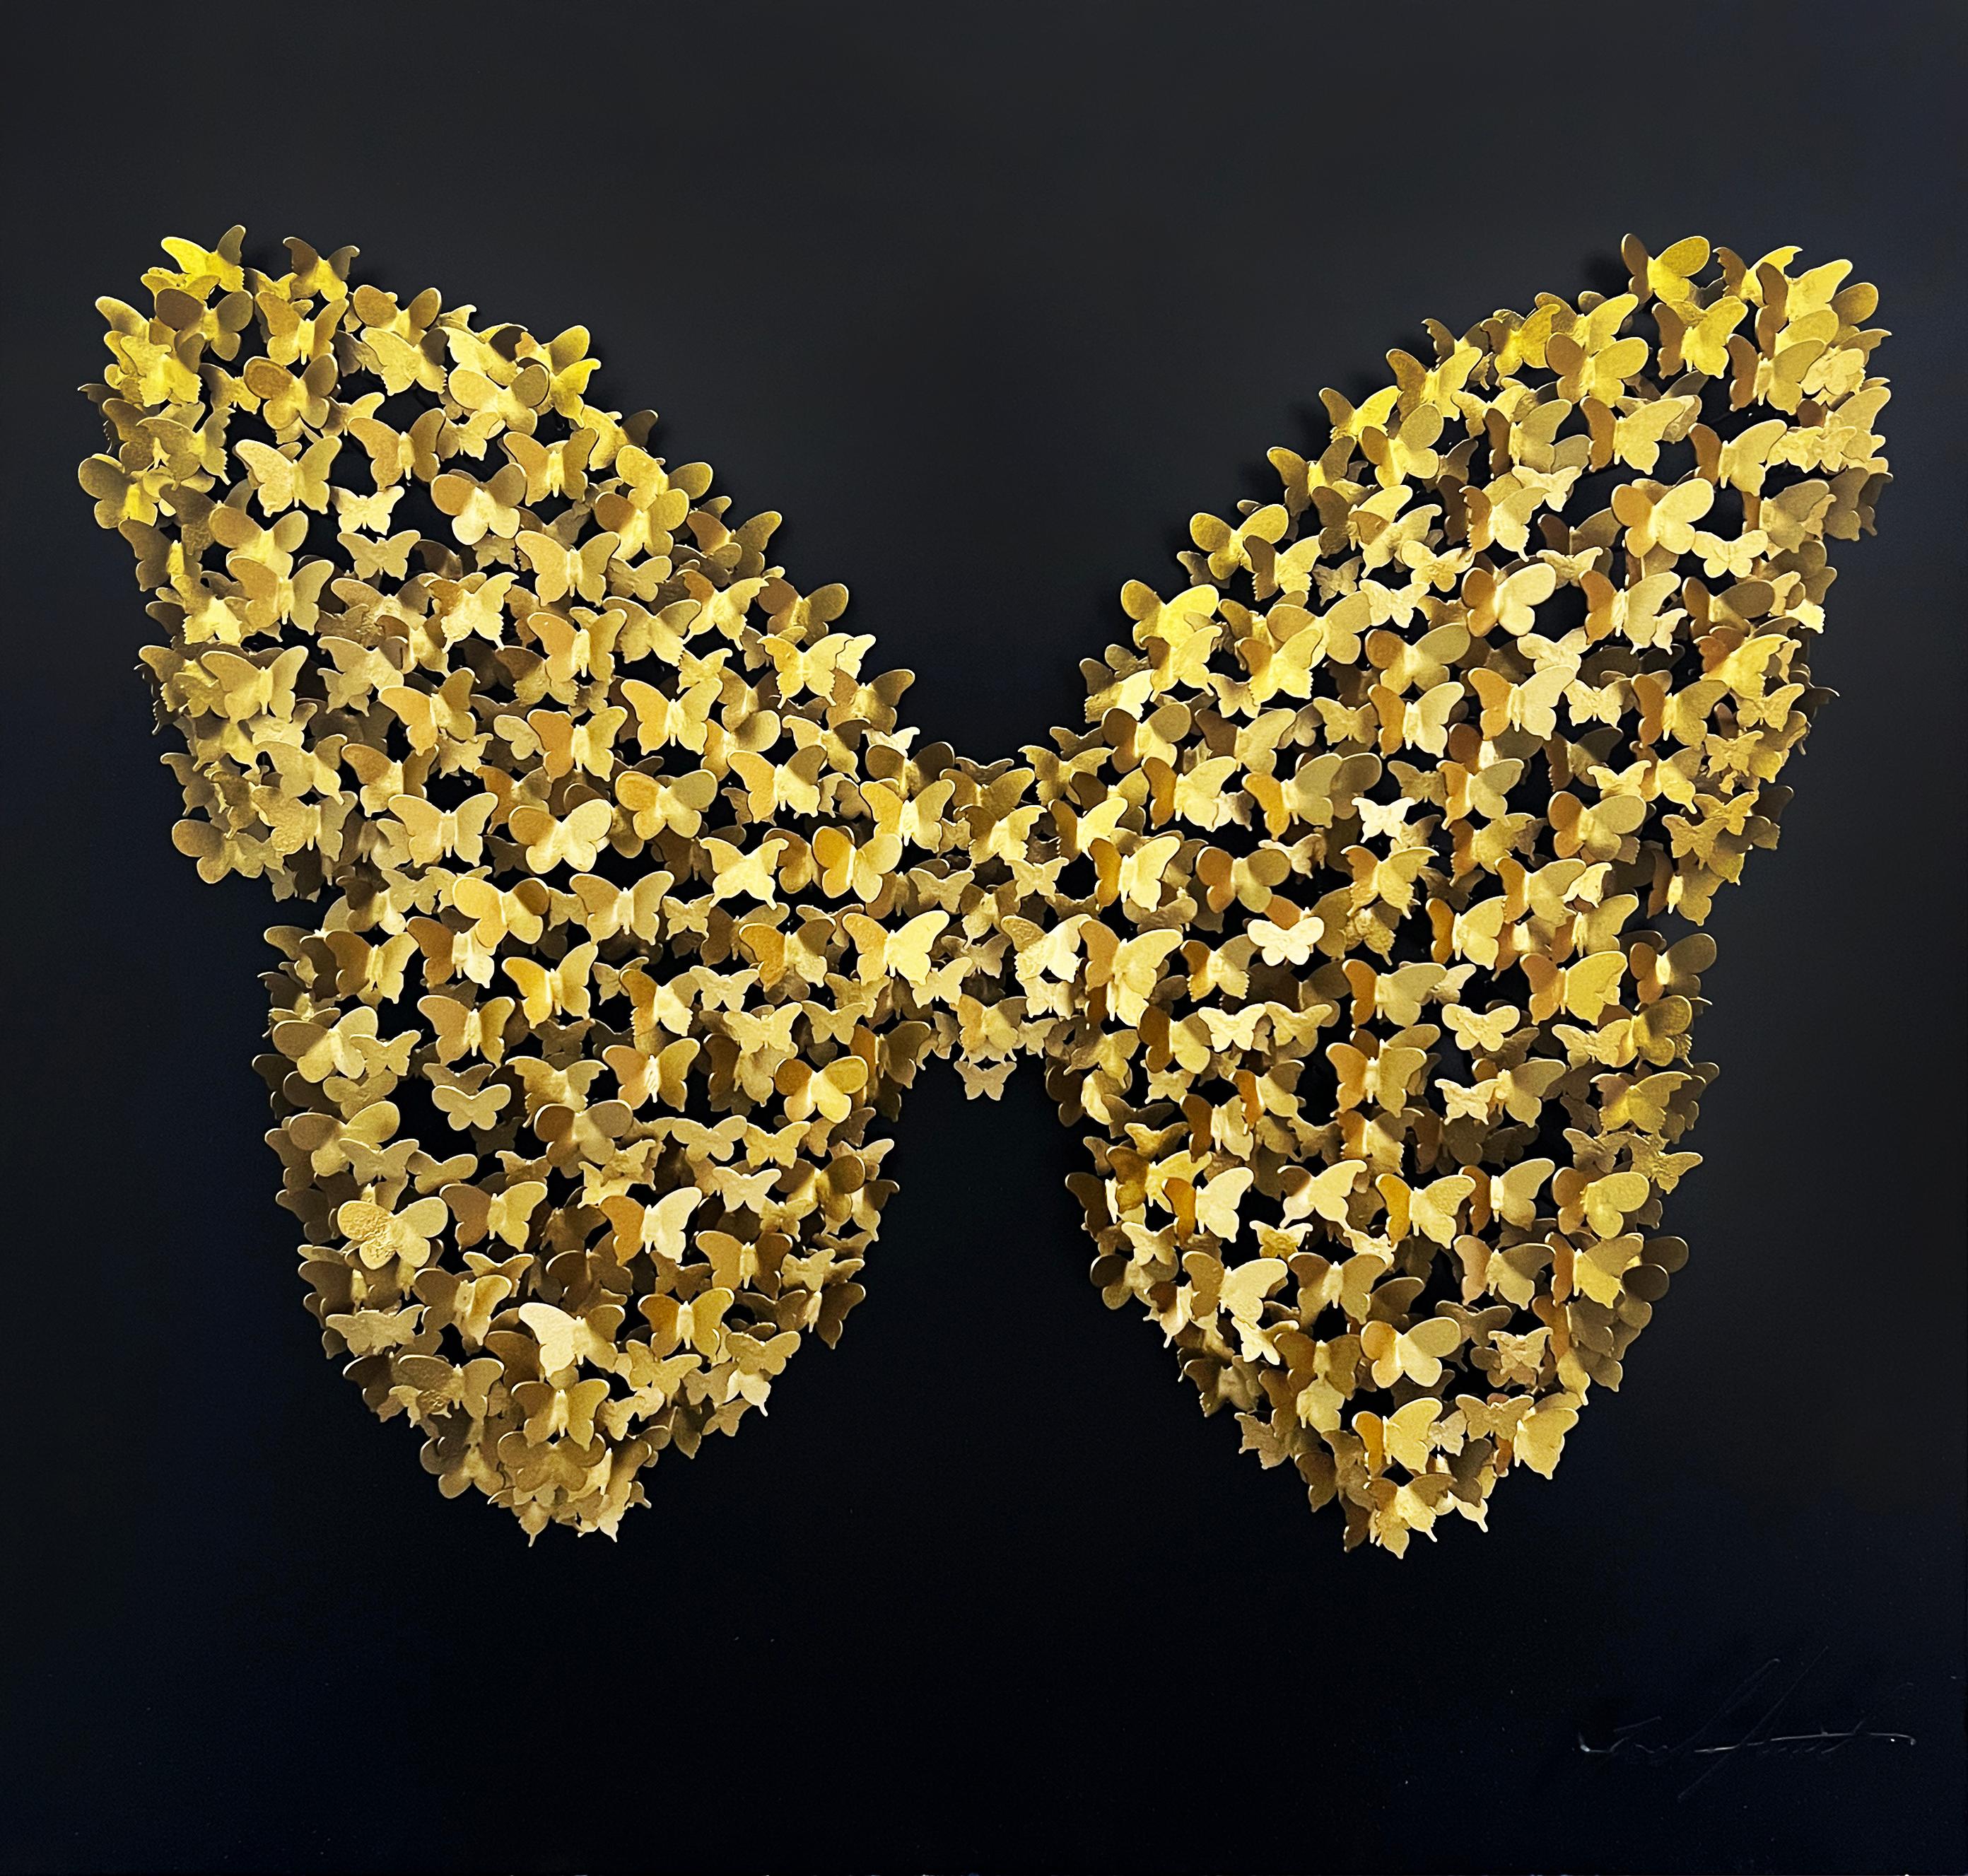 Circle of Life (Schmetterling) - Schwarz/Gold, Wandskulptur aus Metall in Mischtechnik